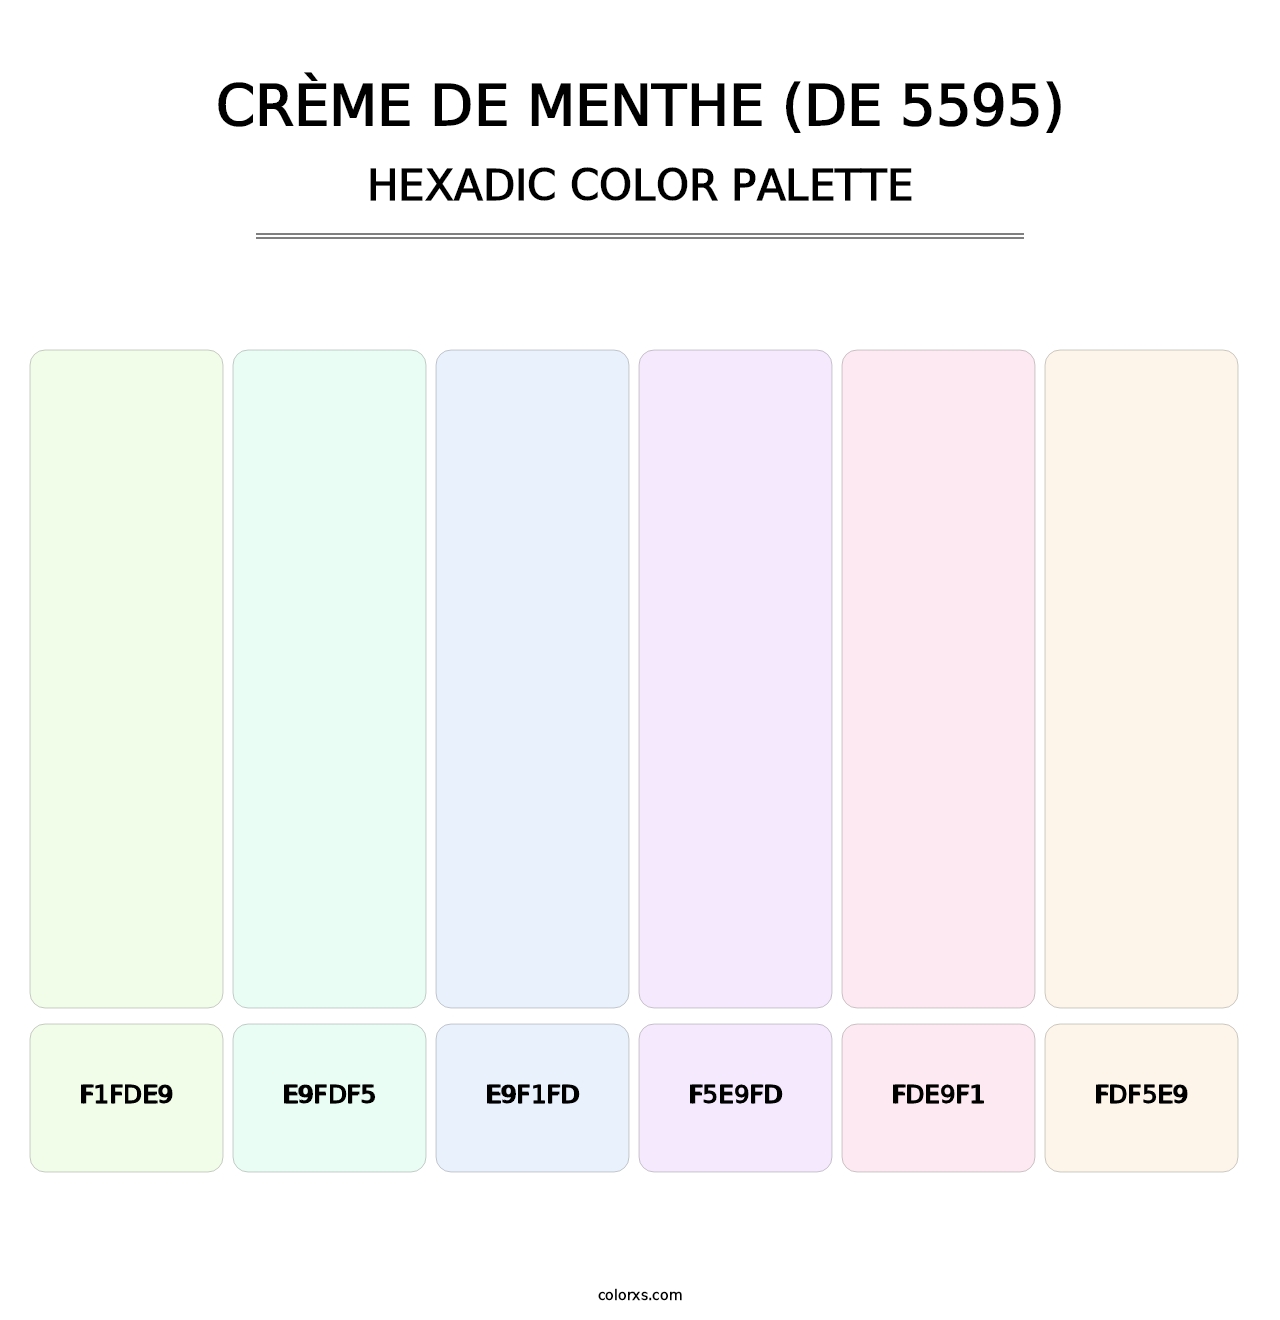 Crème de Menthe (DE 5595) - Hexadic Color Palette